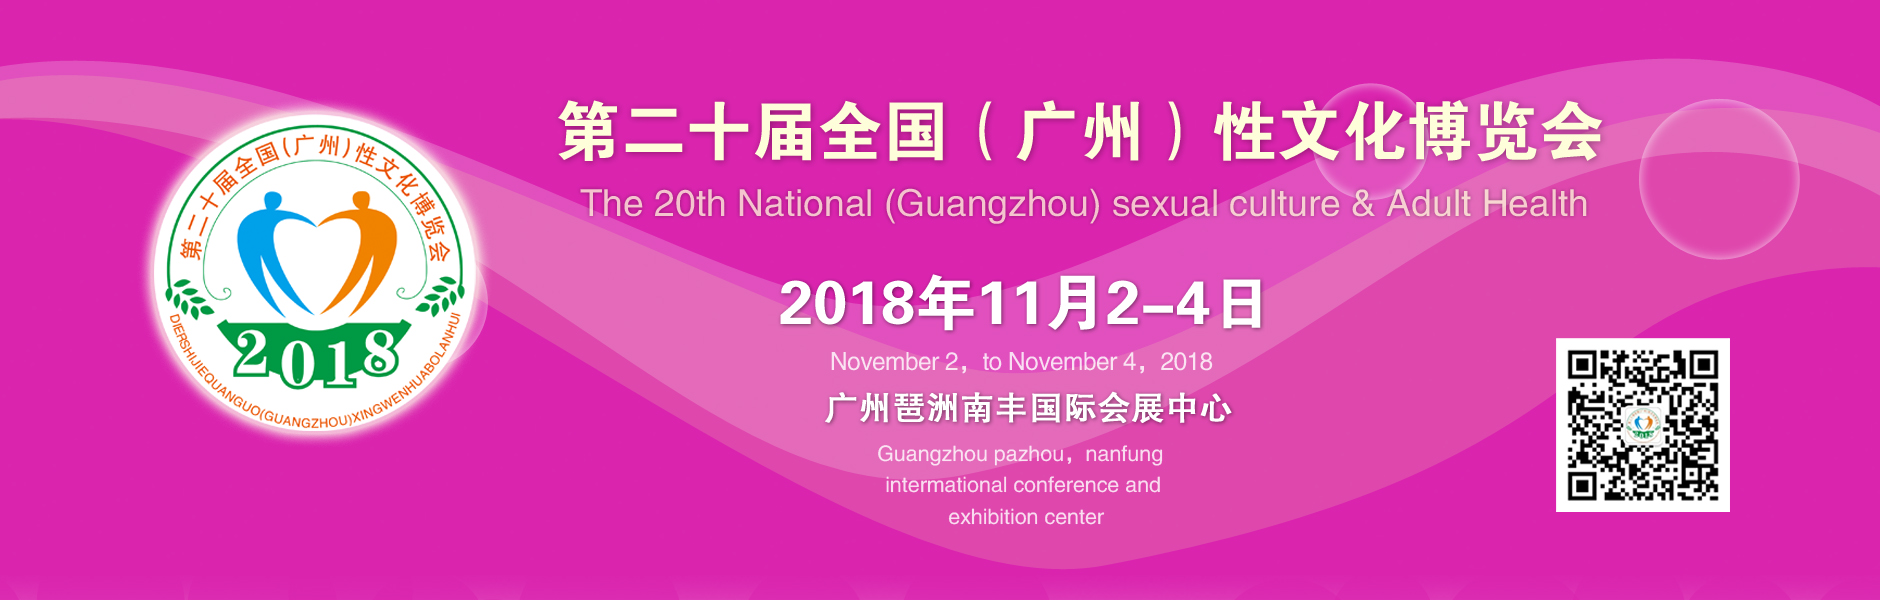 2018第二十届广州性文化节横幅banner